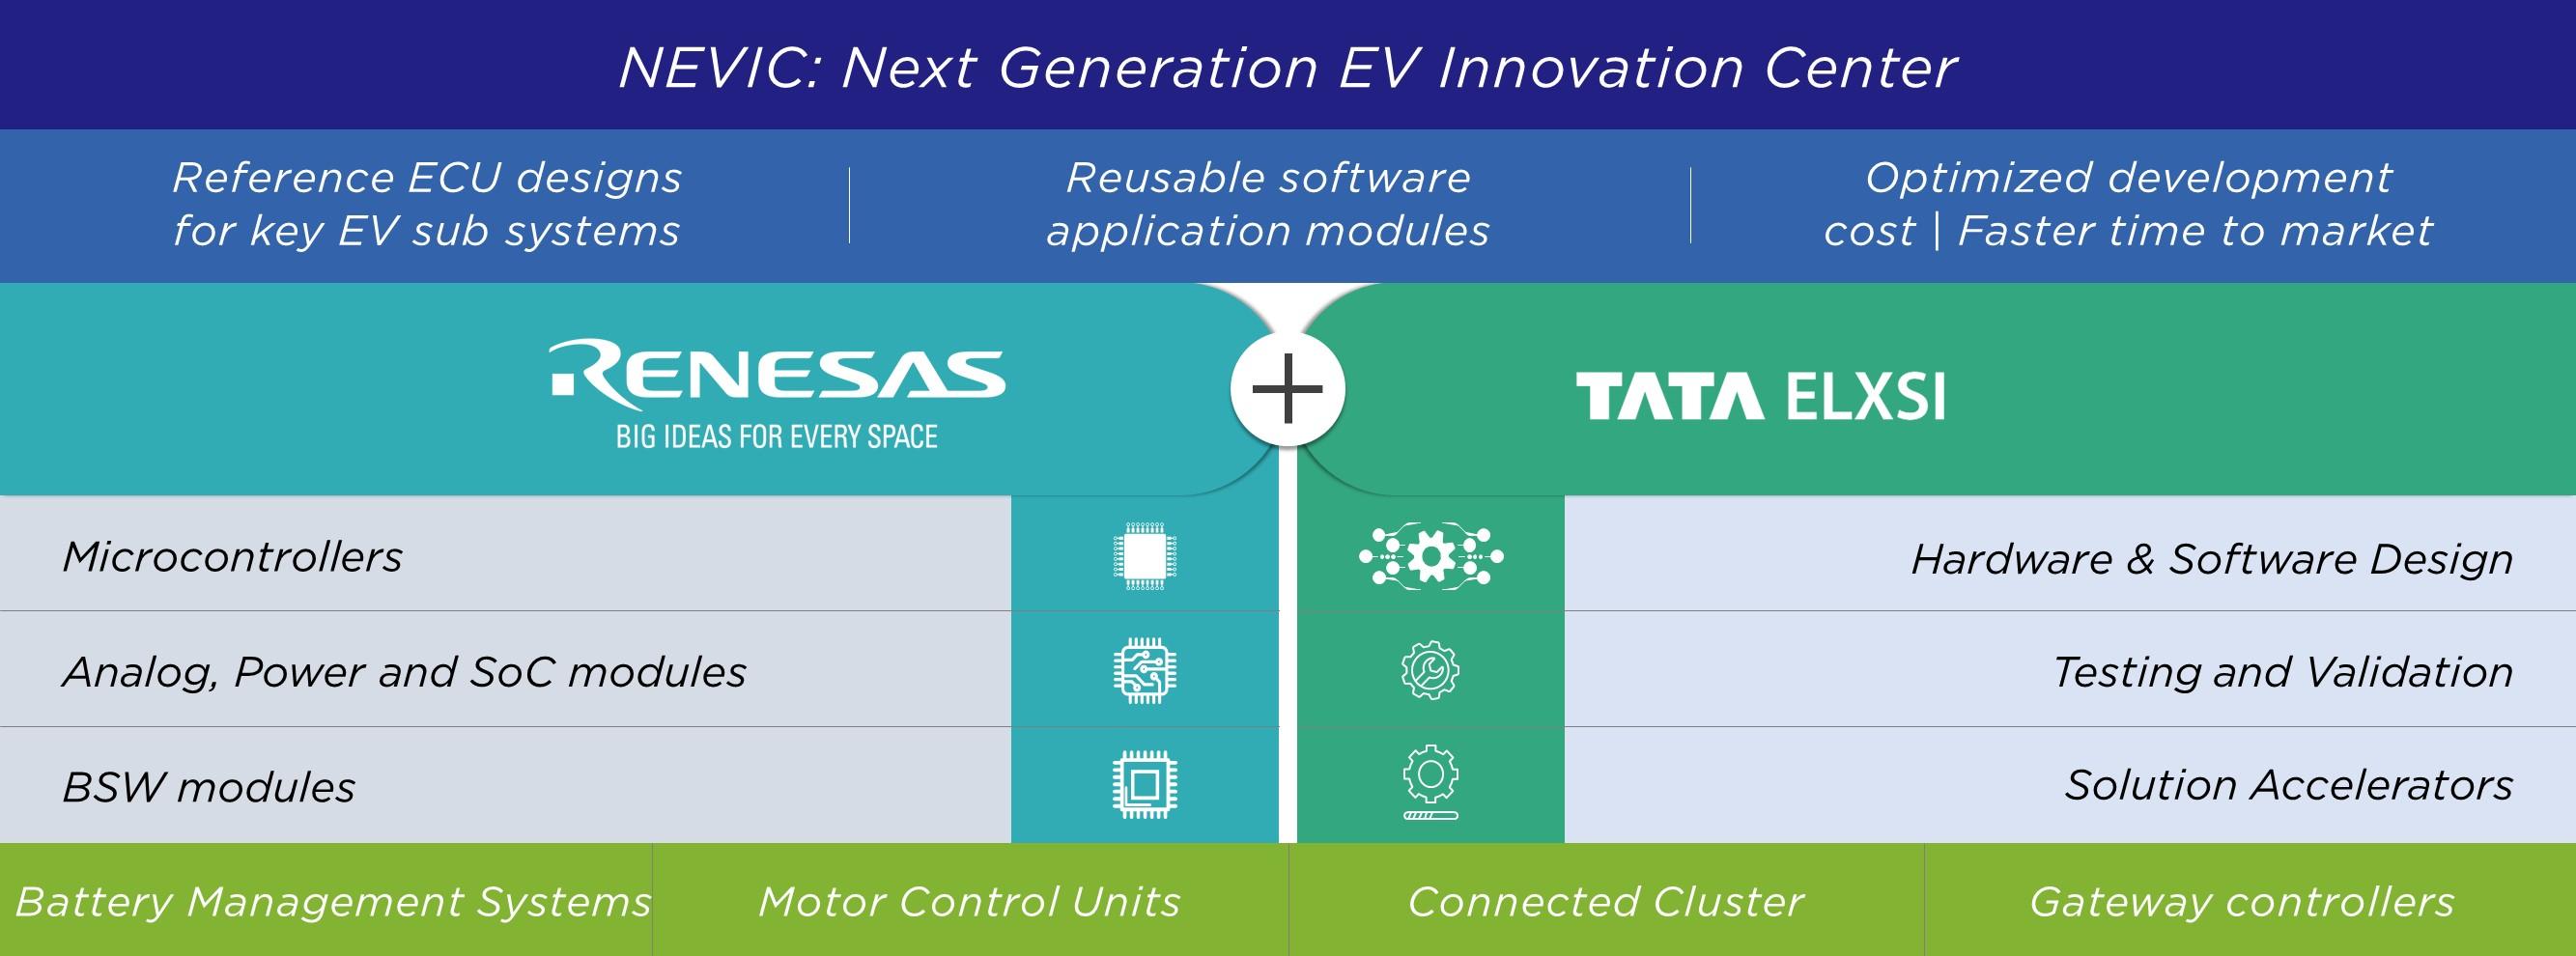 Next Generation EV Innovation Center NEVIC